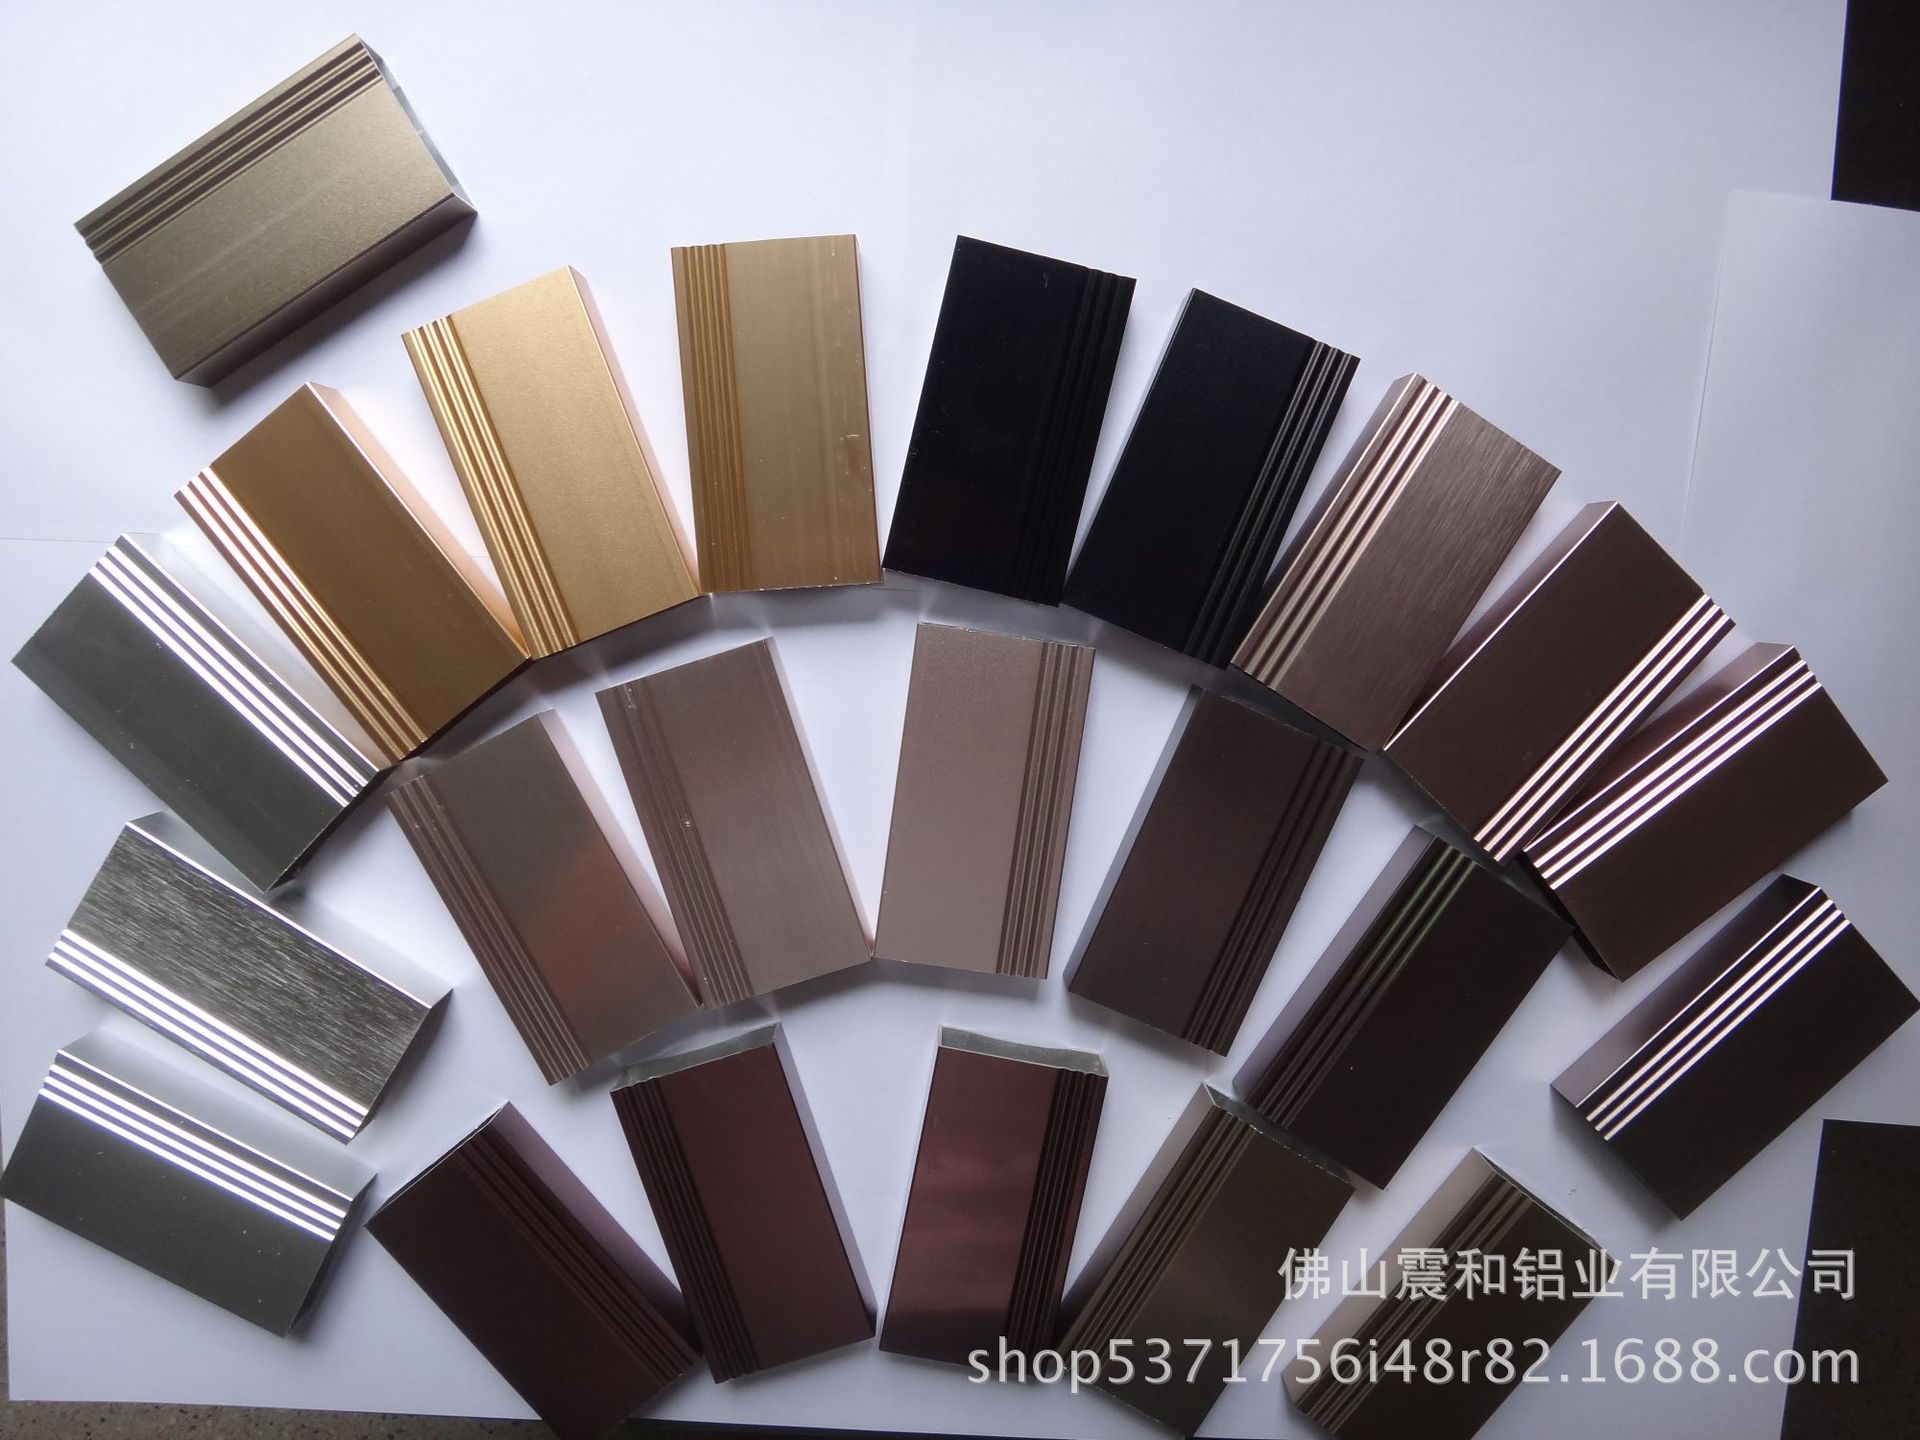 专业生产环保铝型材工业铝型材加工氧化黑色出口供销6463铝合金